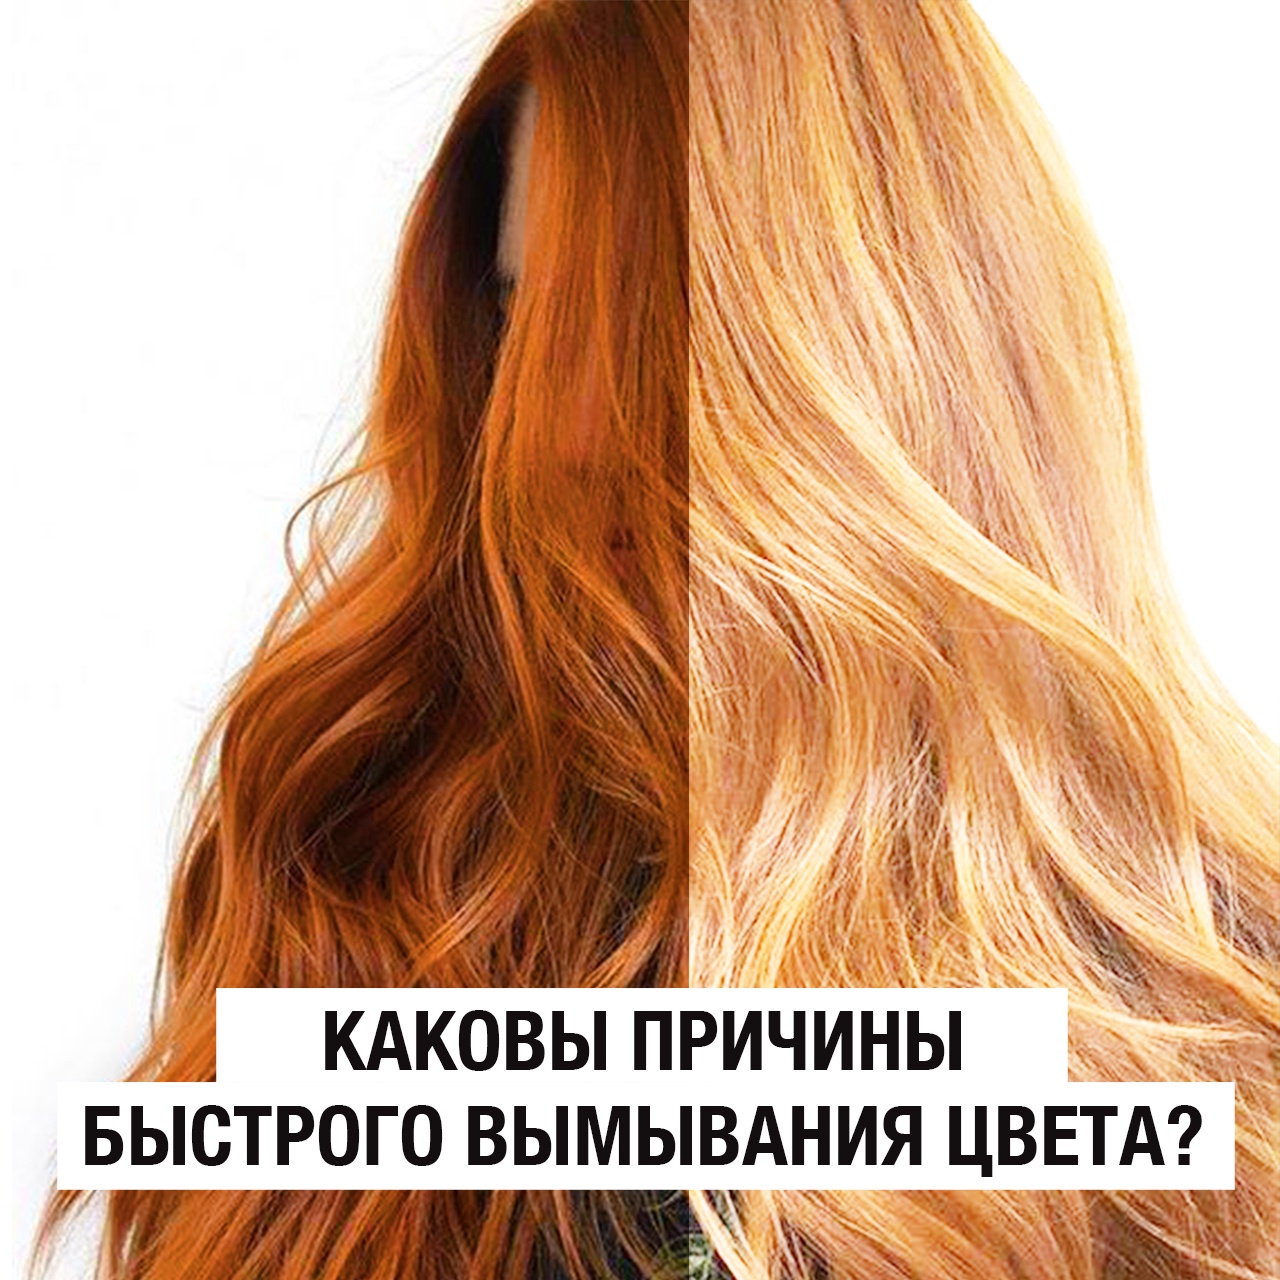 WT-Парикмахер Каковы причины быстрого вымывания цвета волос?